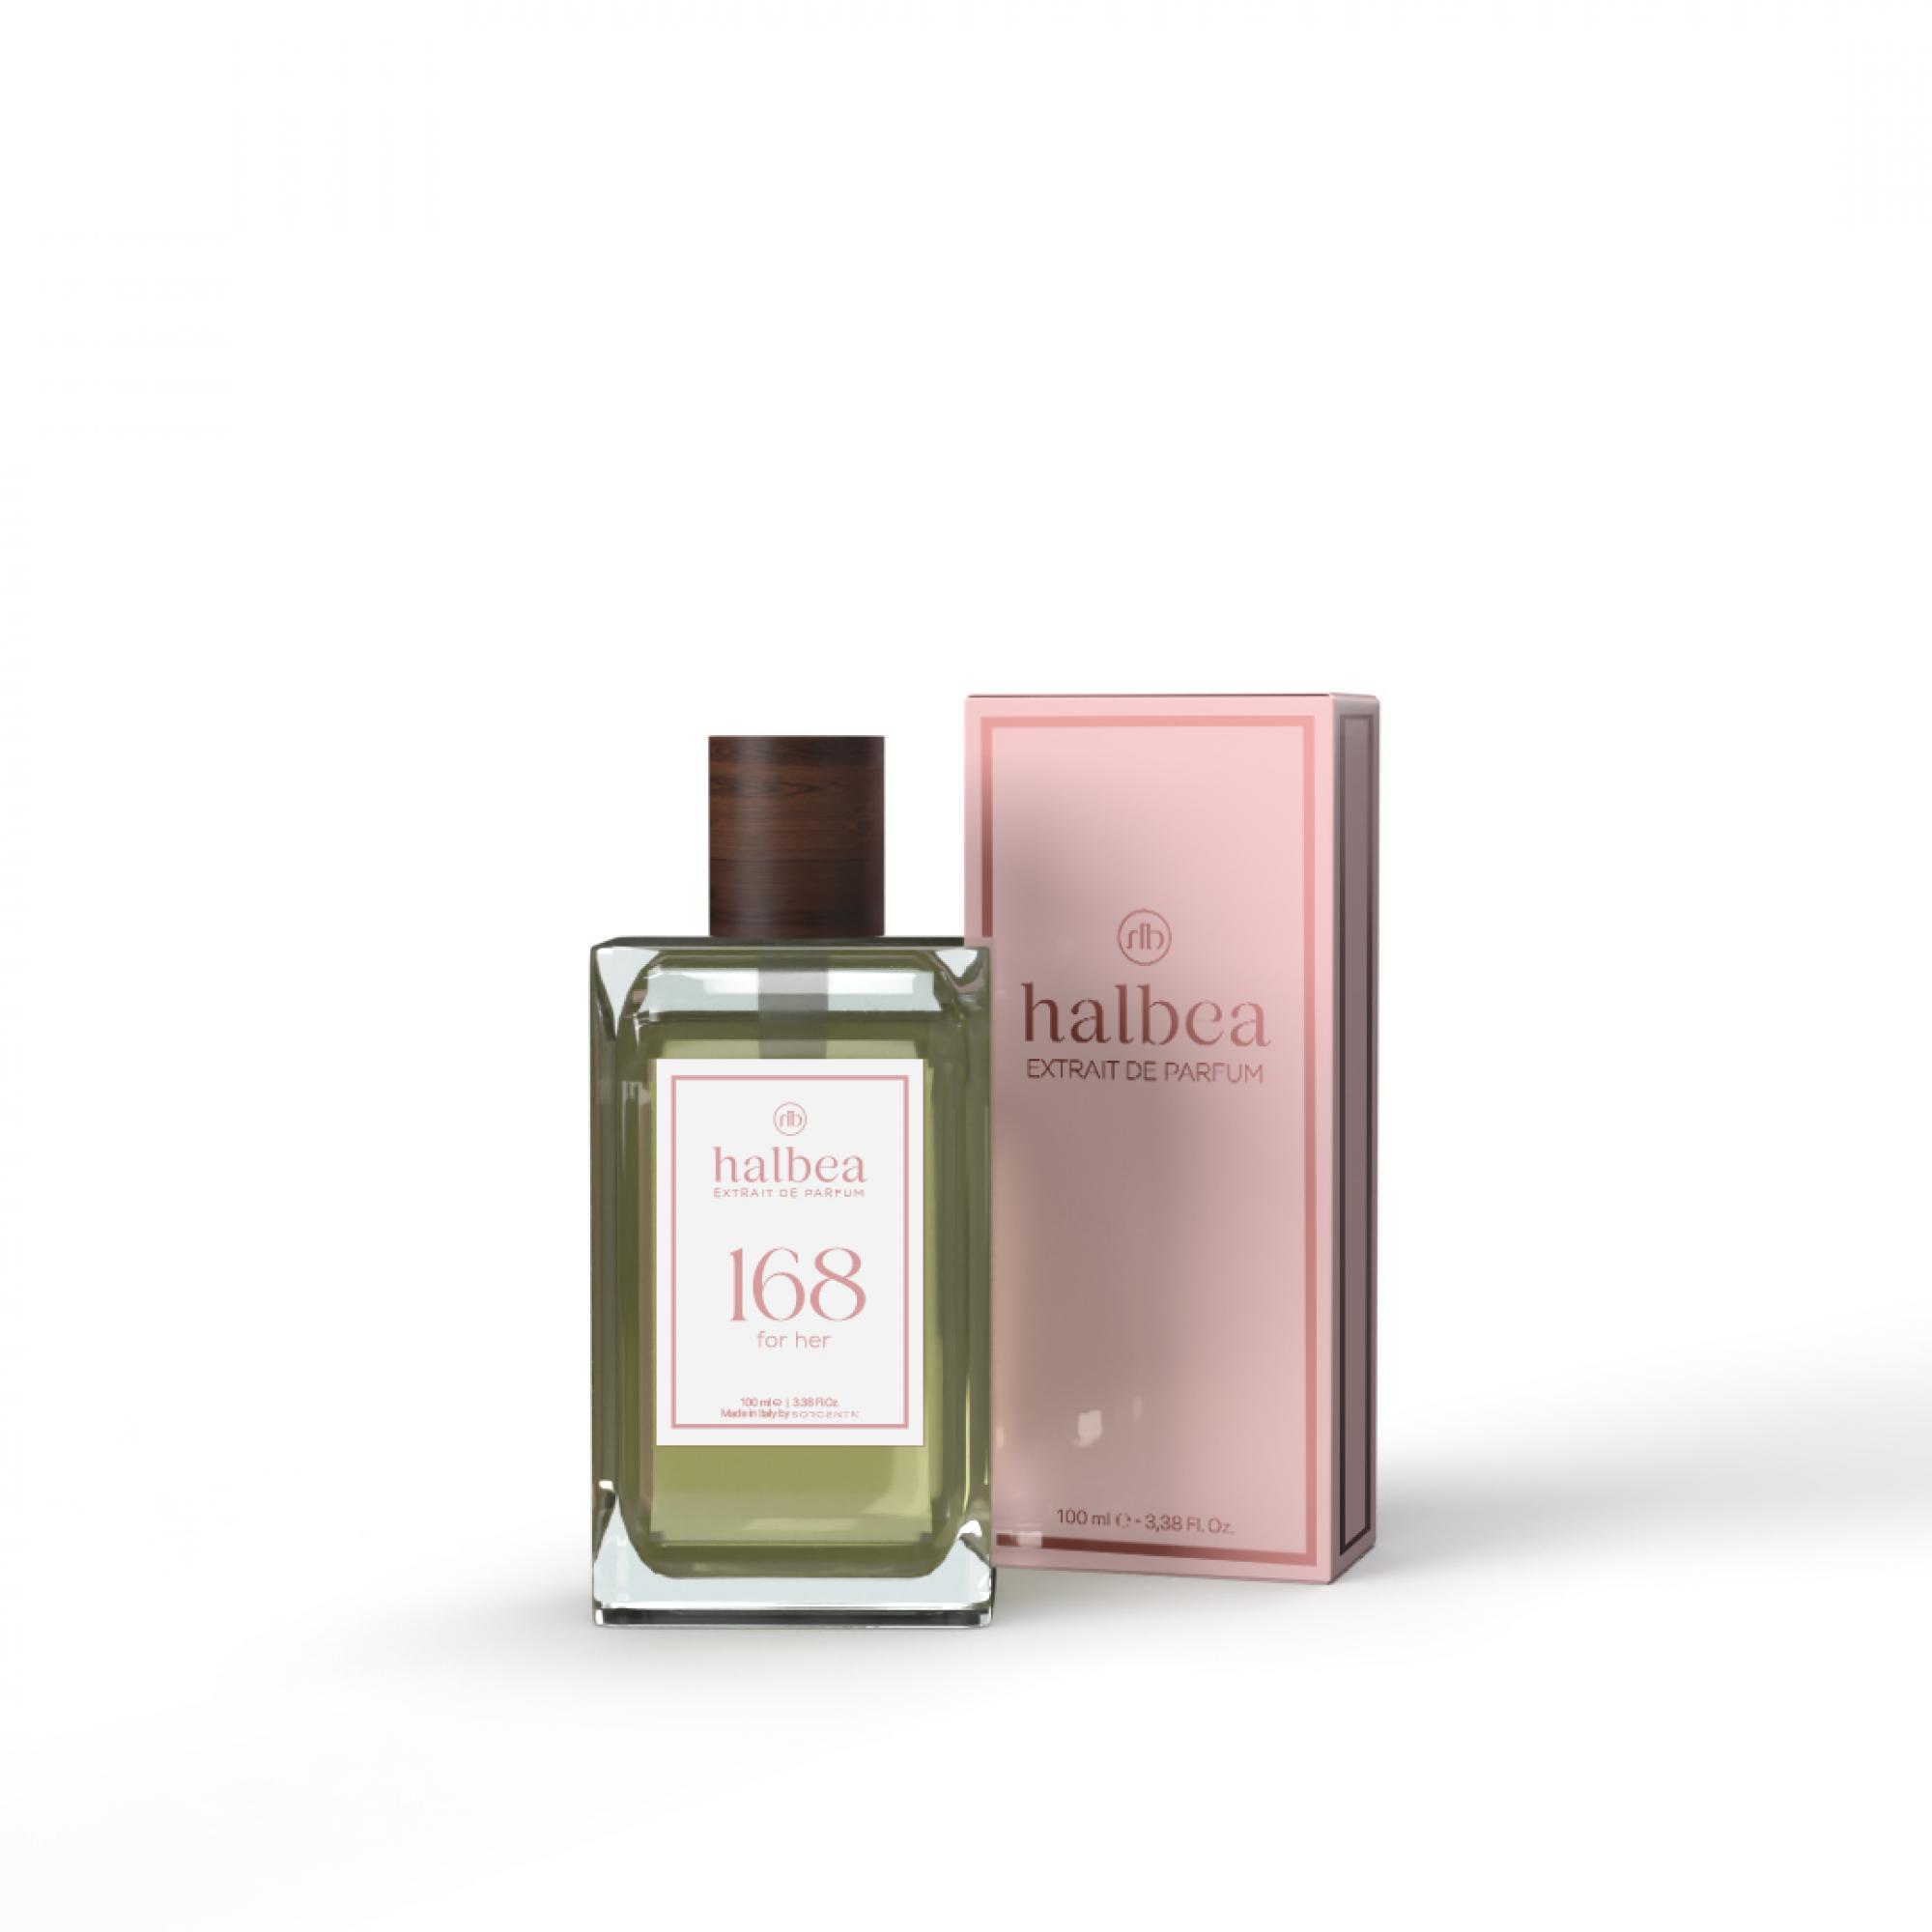 Halbea Parfum Nr. 168 insp. by Burberry Weekend 100ml